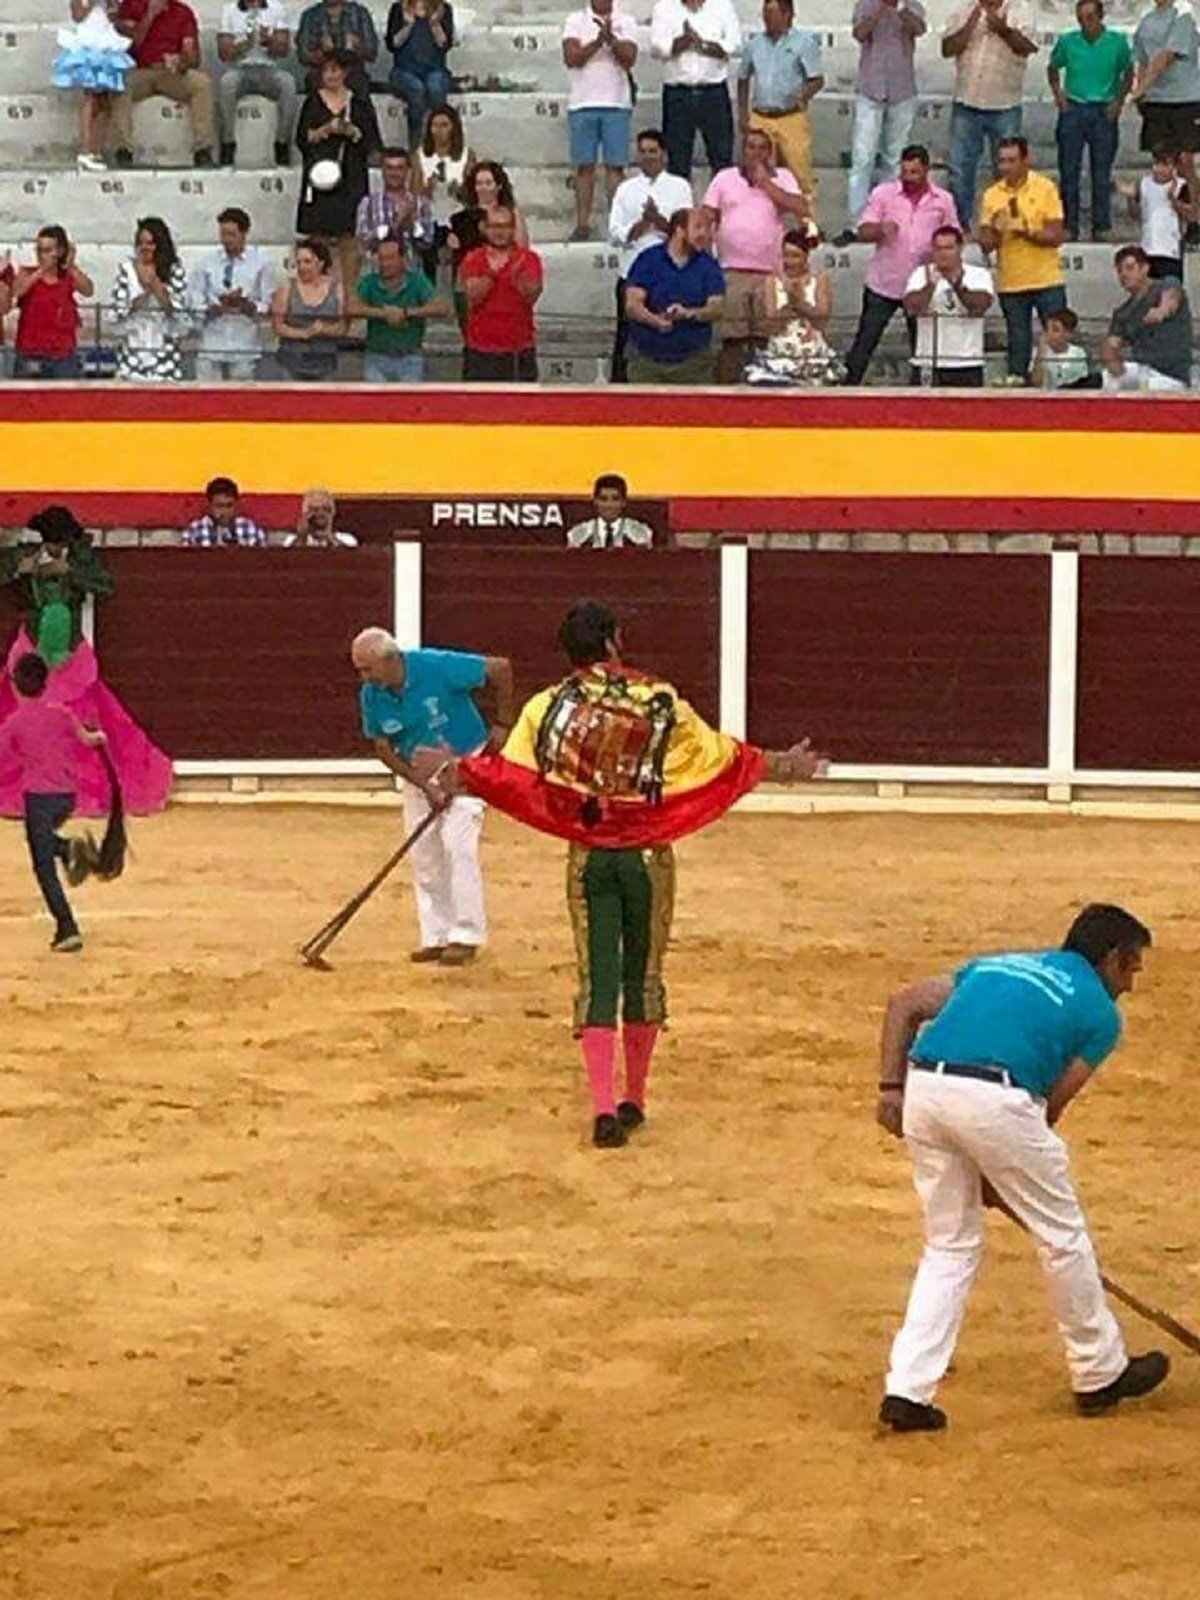 Piden retirar la medalla de Cádiz al torero Padilla por la bandera franquista